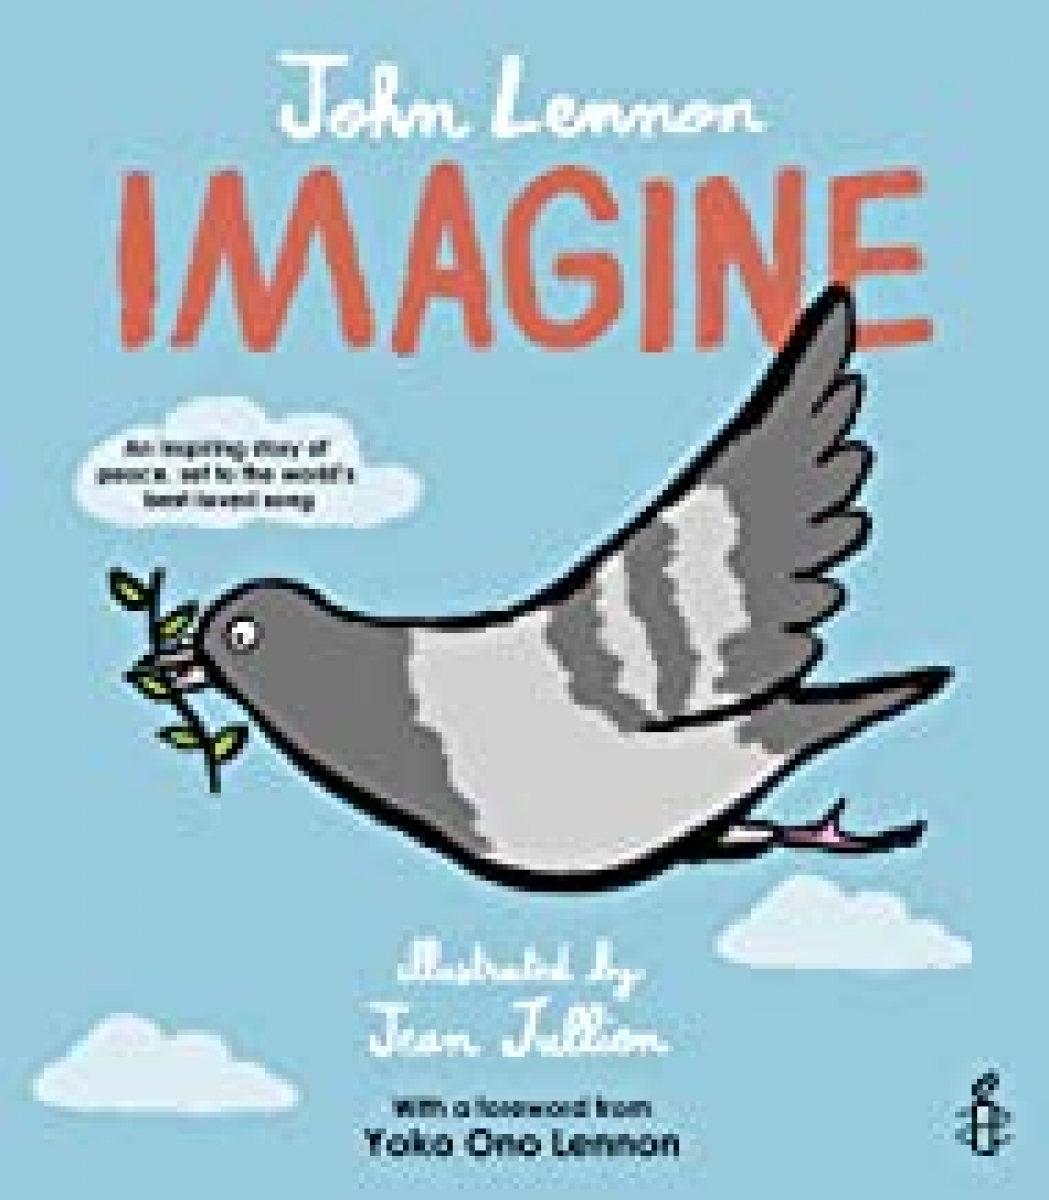 Imagine - John Lennon, Yoko Ono Lennon 